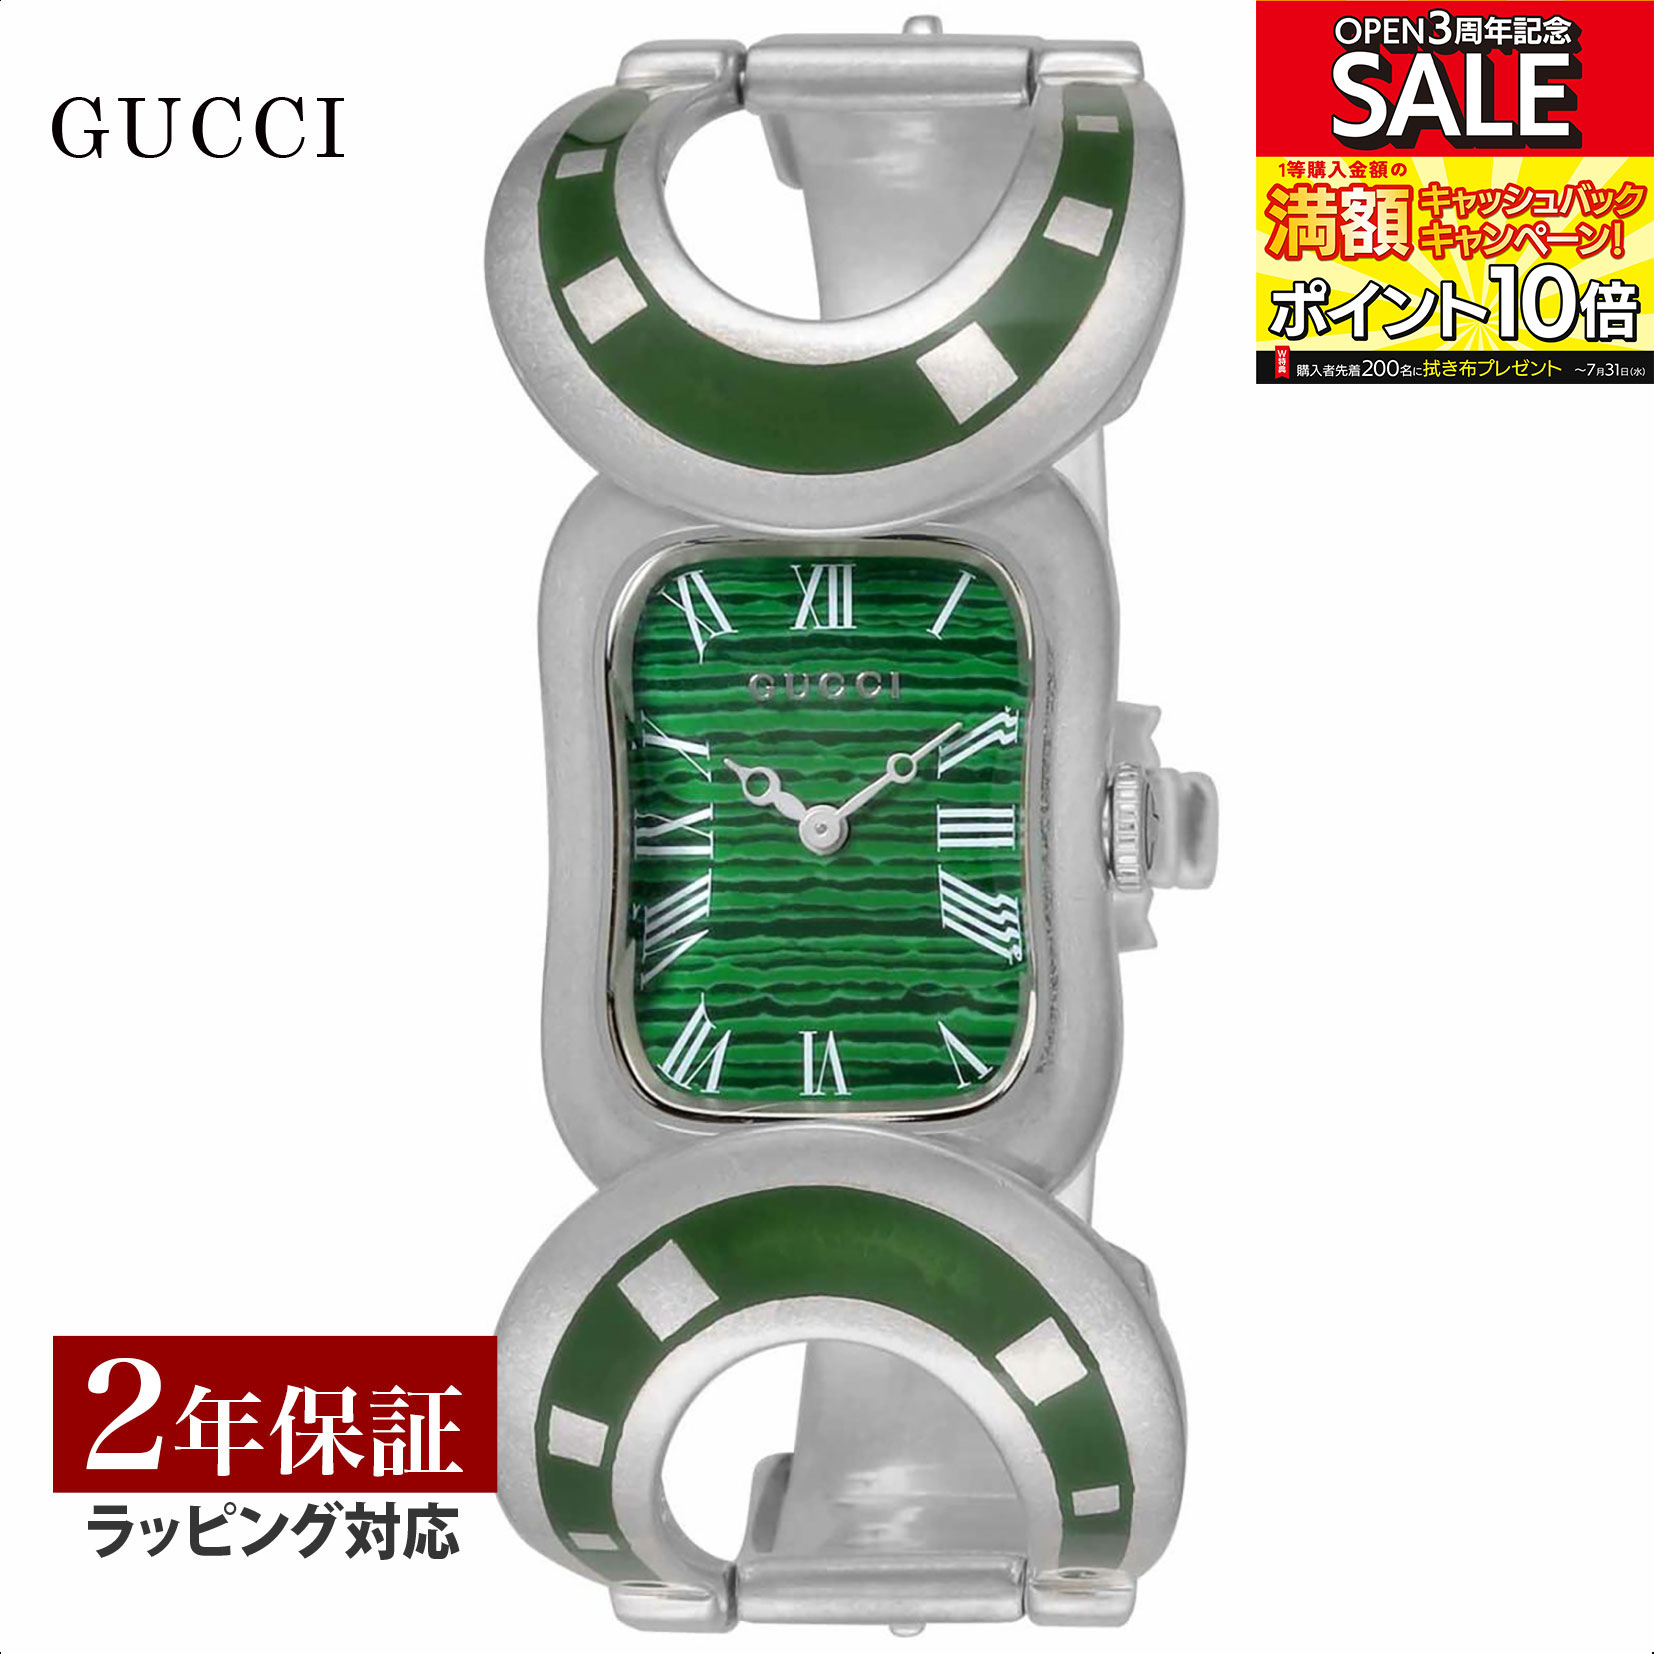 【当店限定】 グッチ GUCCI レディース 時計 HORSEBIT ホースビット クォーツ グリーン YA162502 時計 腕時計 高級腕時計 ブランド